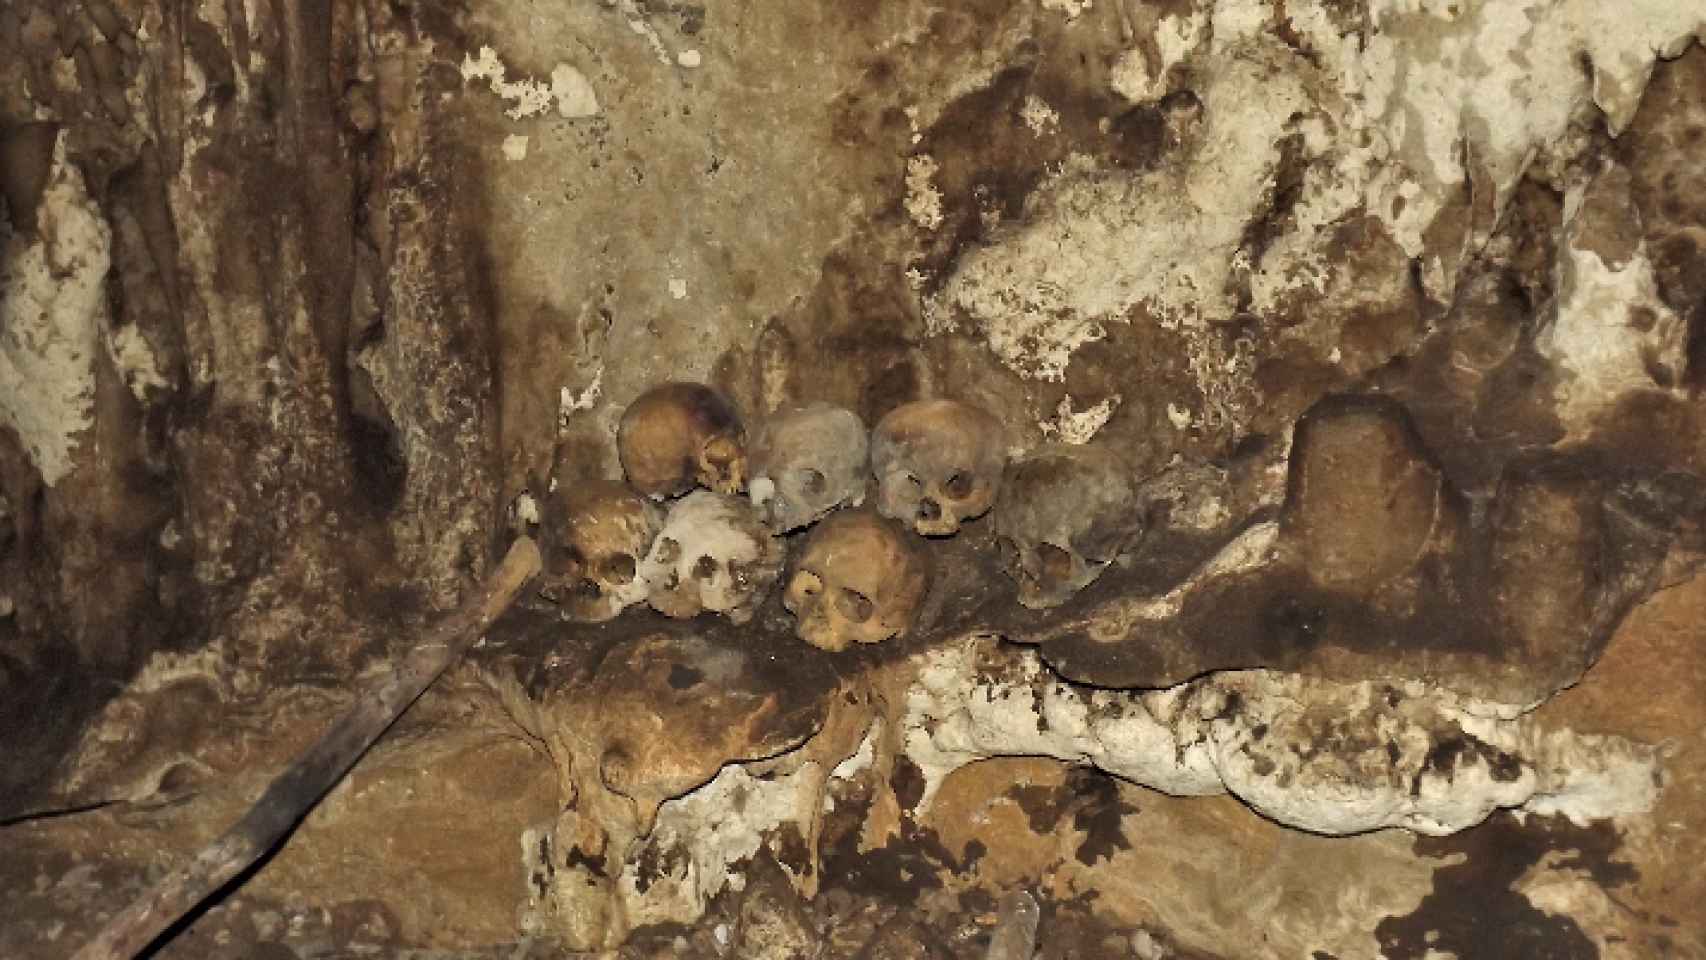 Altar de cráneos, o tzompantli, en la Cueva de Comalapa.